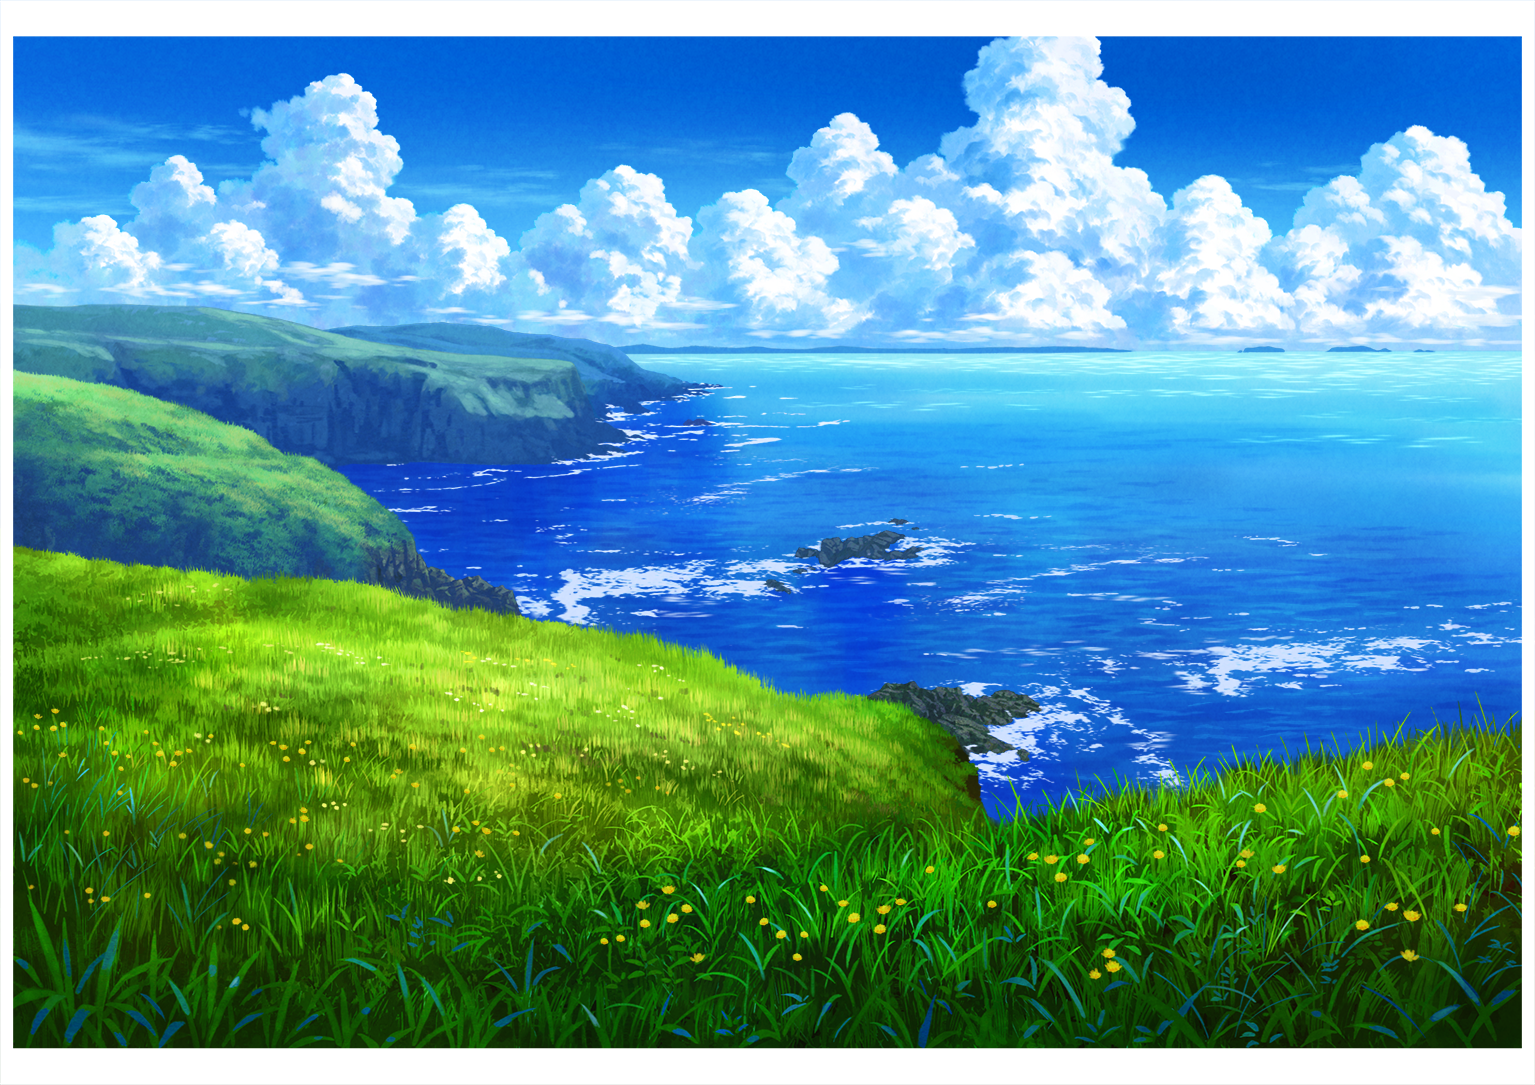 花咲岬夏季版本-风景背景